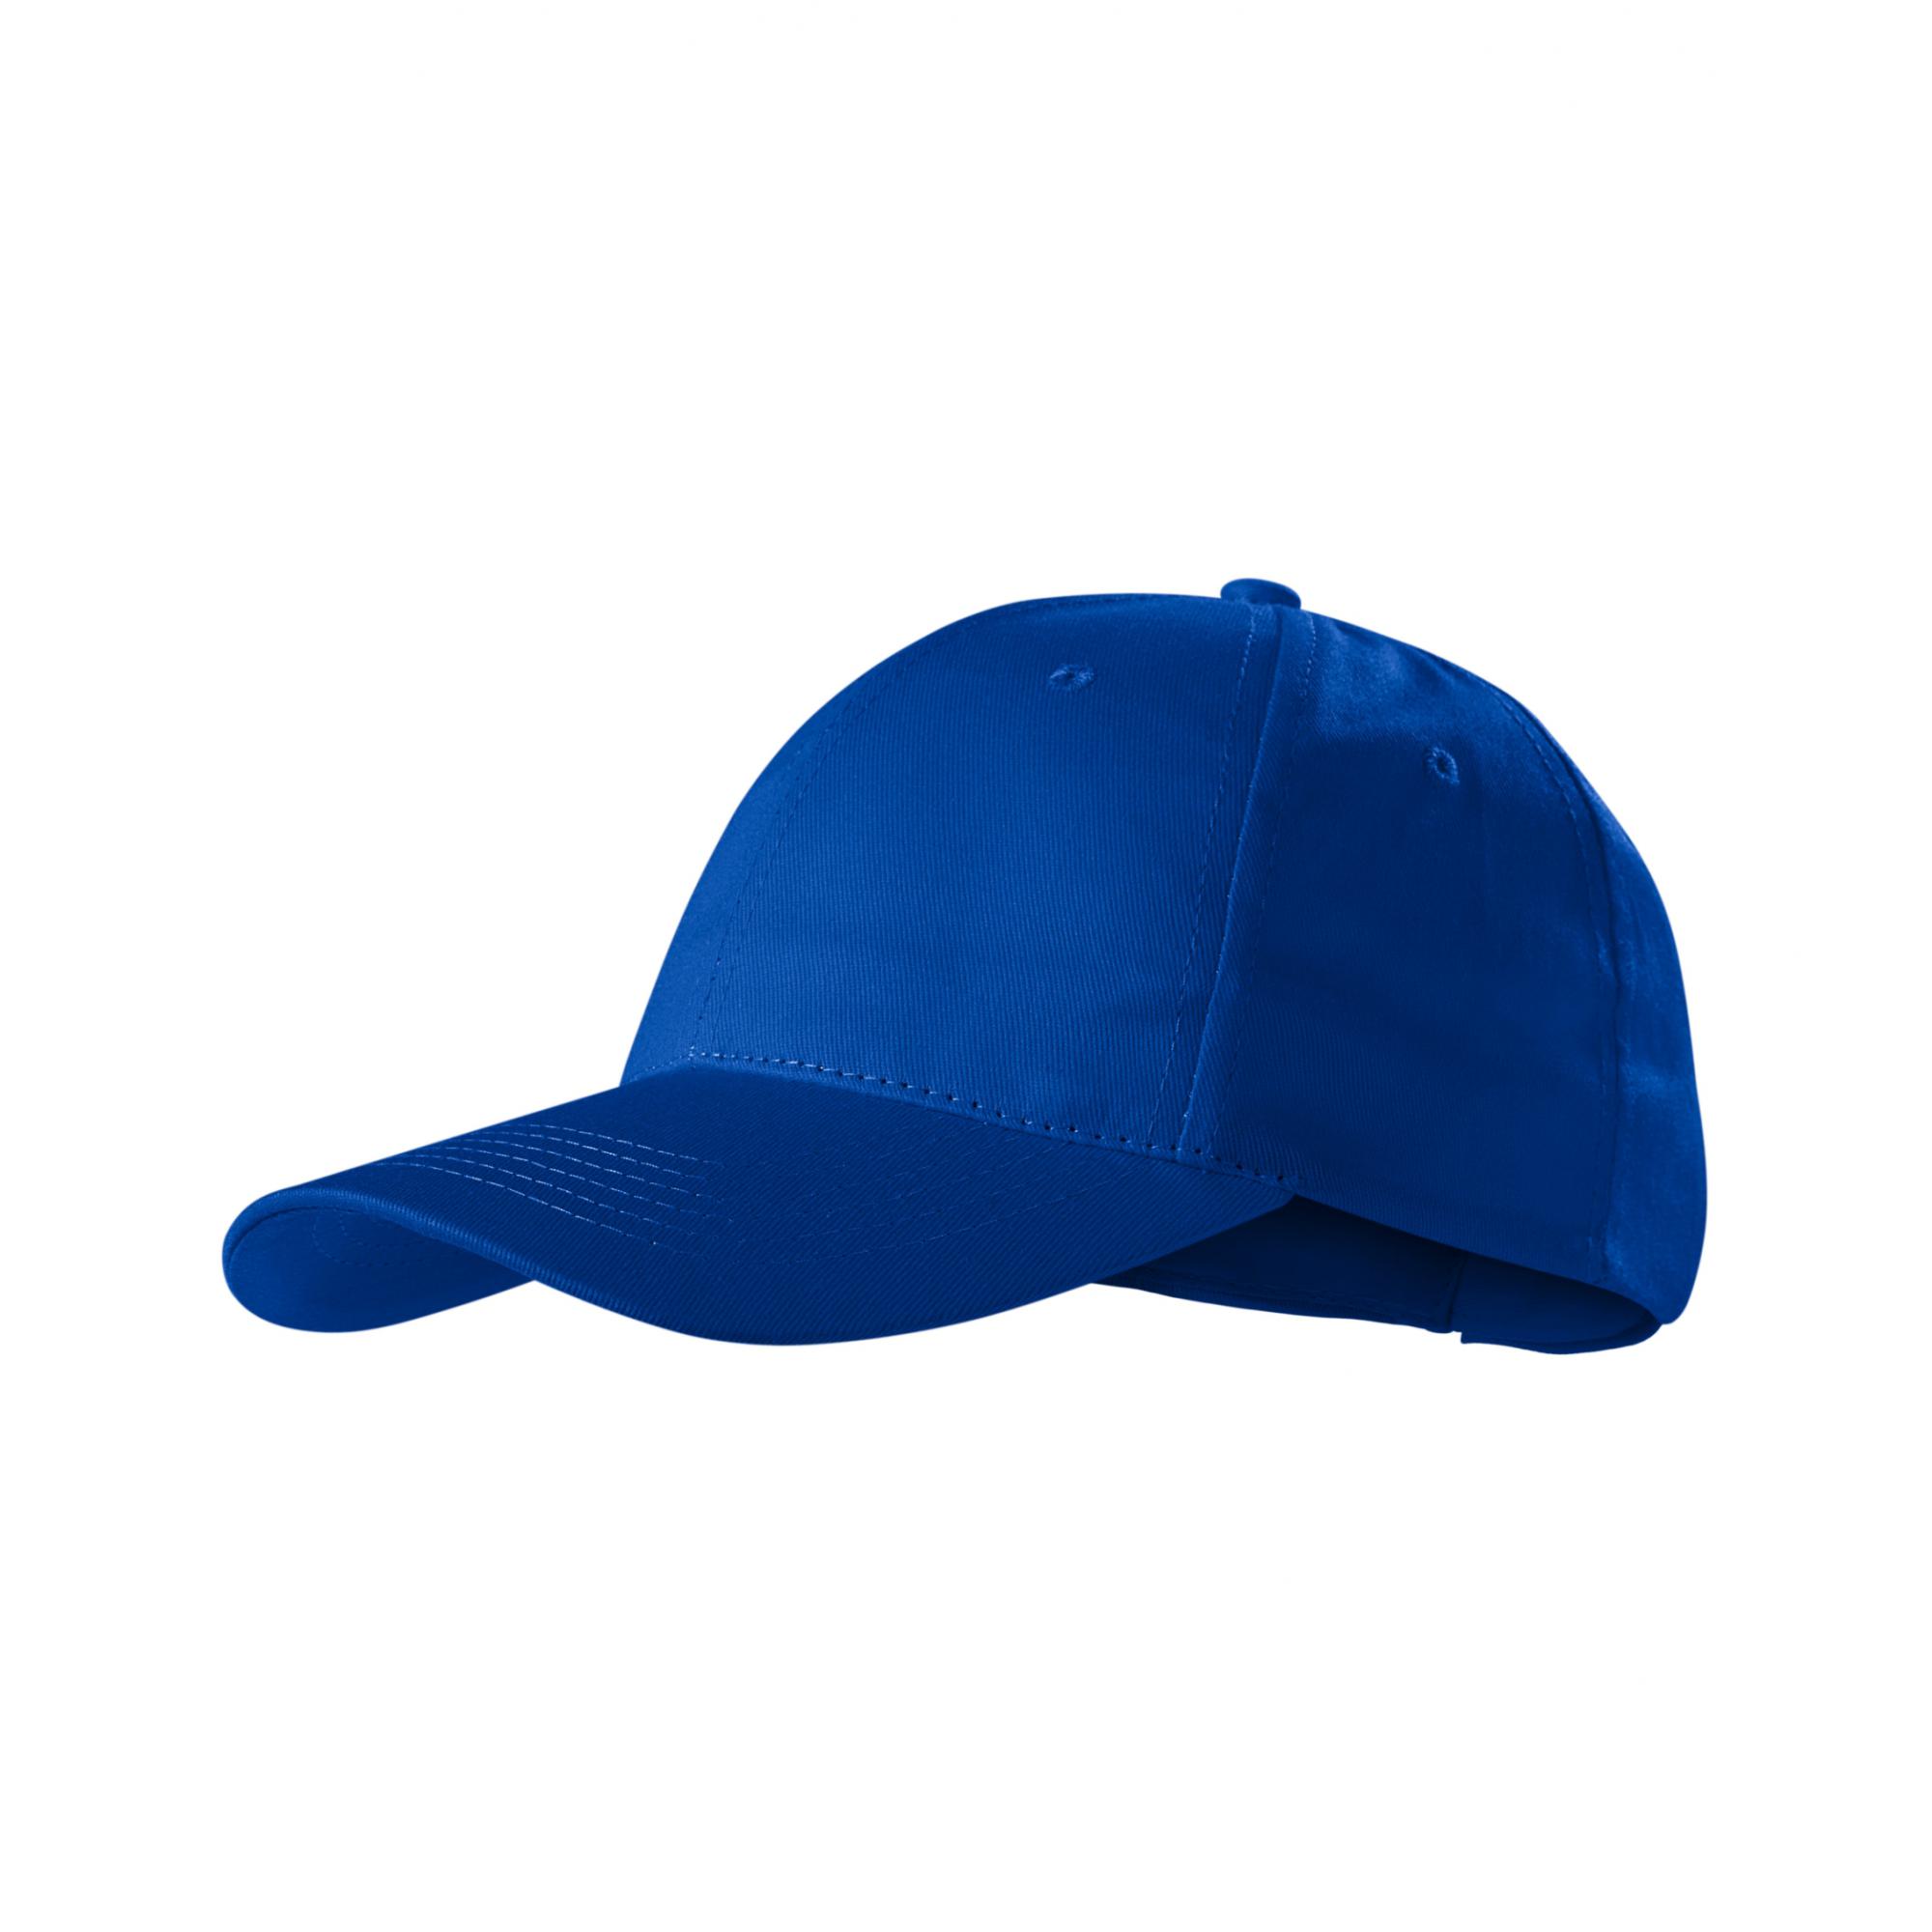 Şapcă unisex Sunshine P31 Albastru regal Marime universala